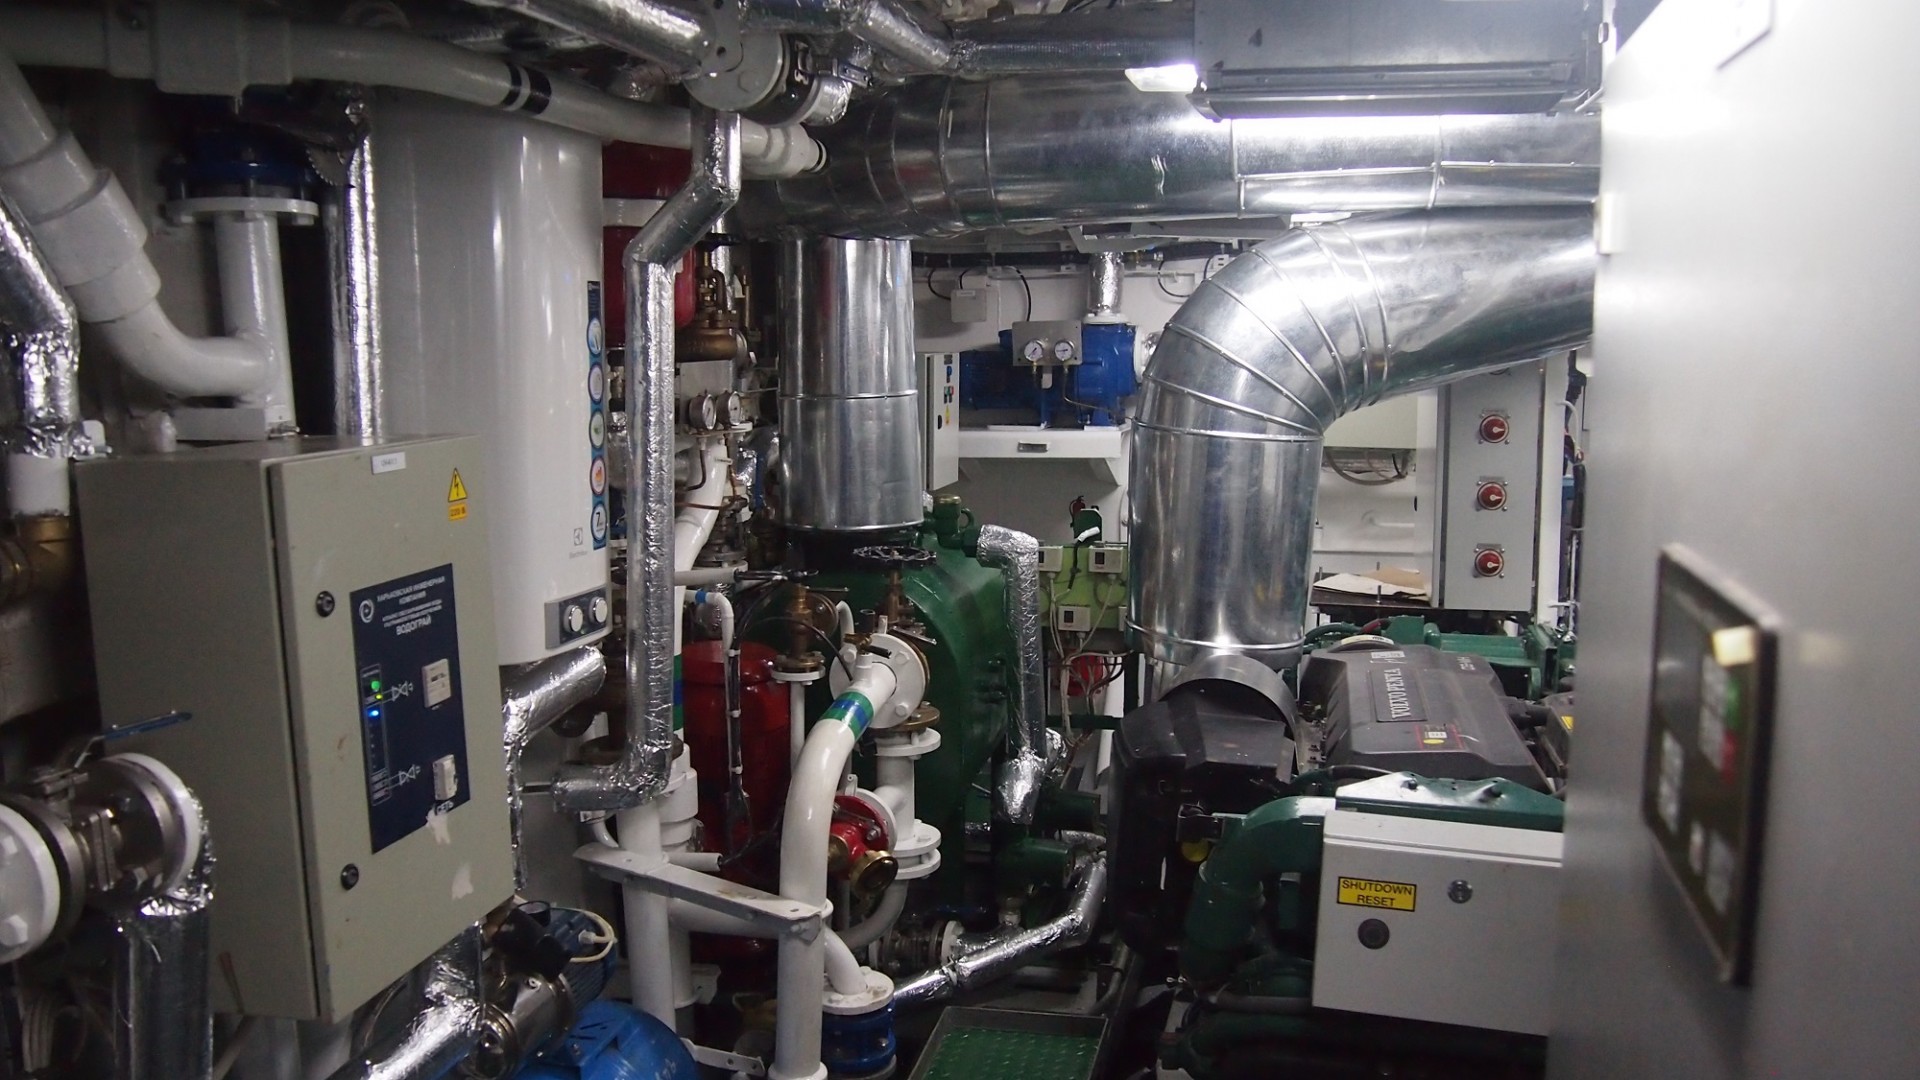 Электроэнергетическая установка судна представлена 2-мя вспомогательными дизель-генераторами D5AT/UCM274° C-1 фирмы 